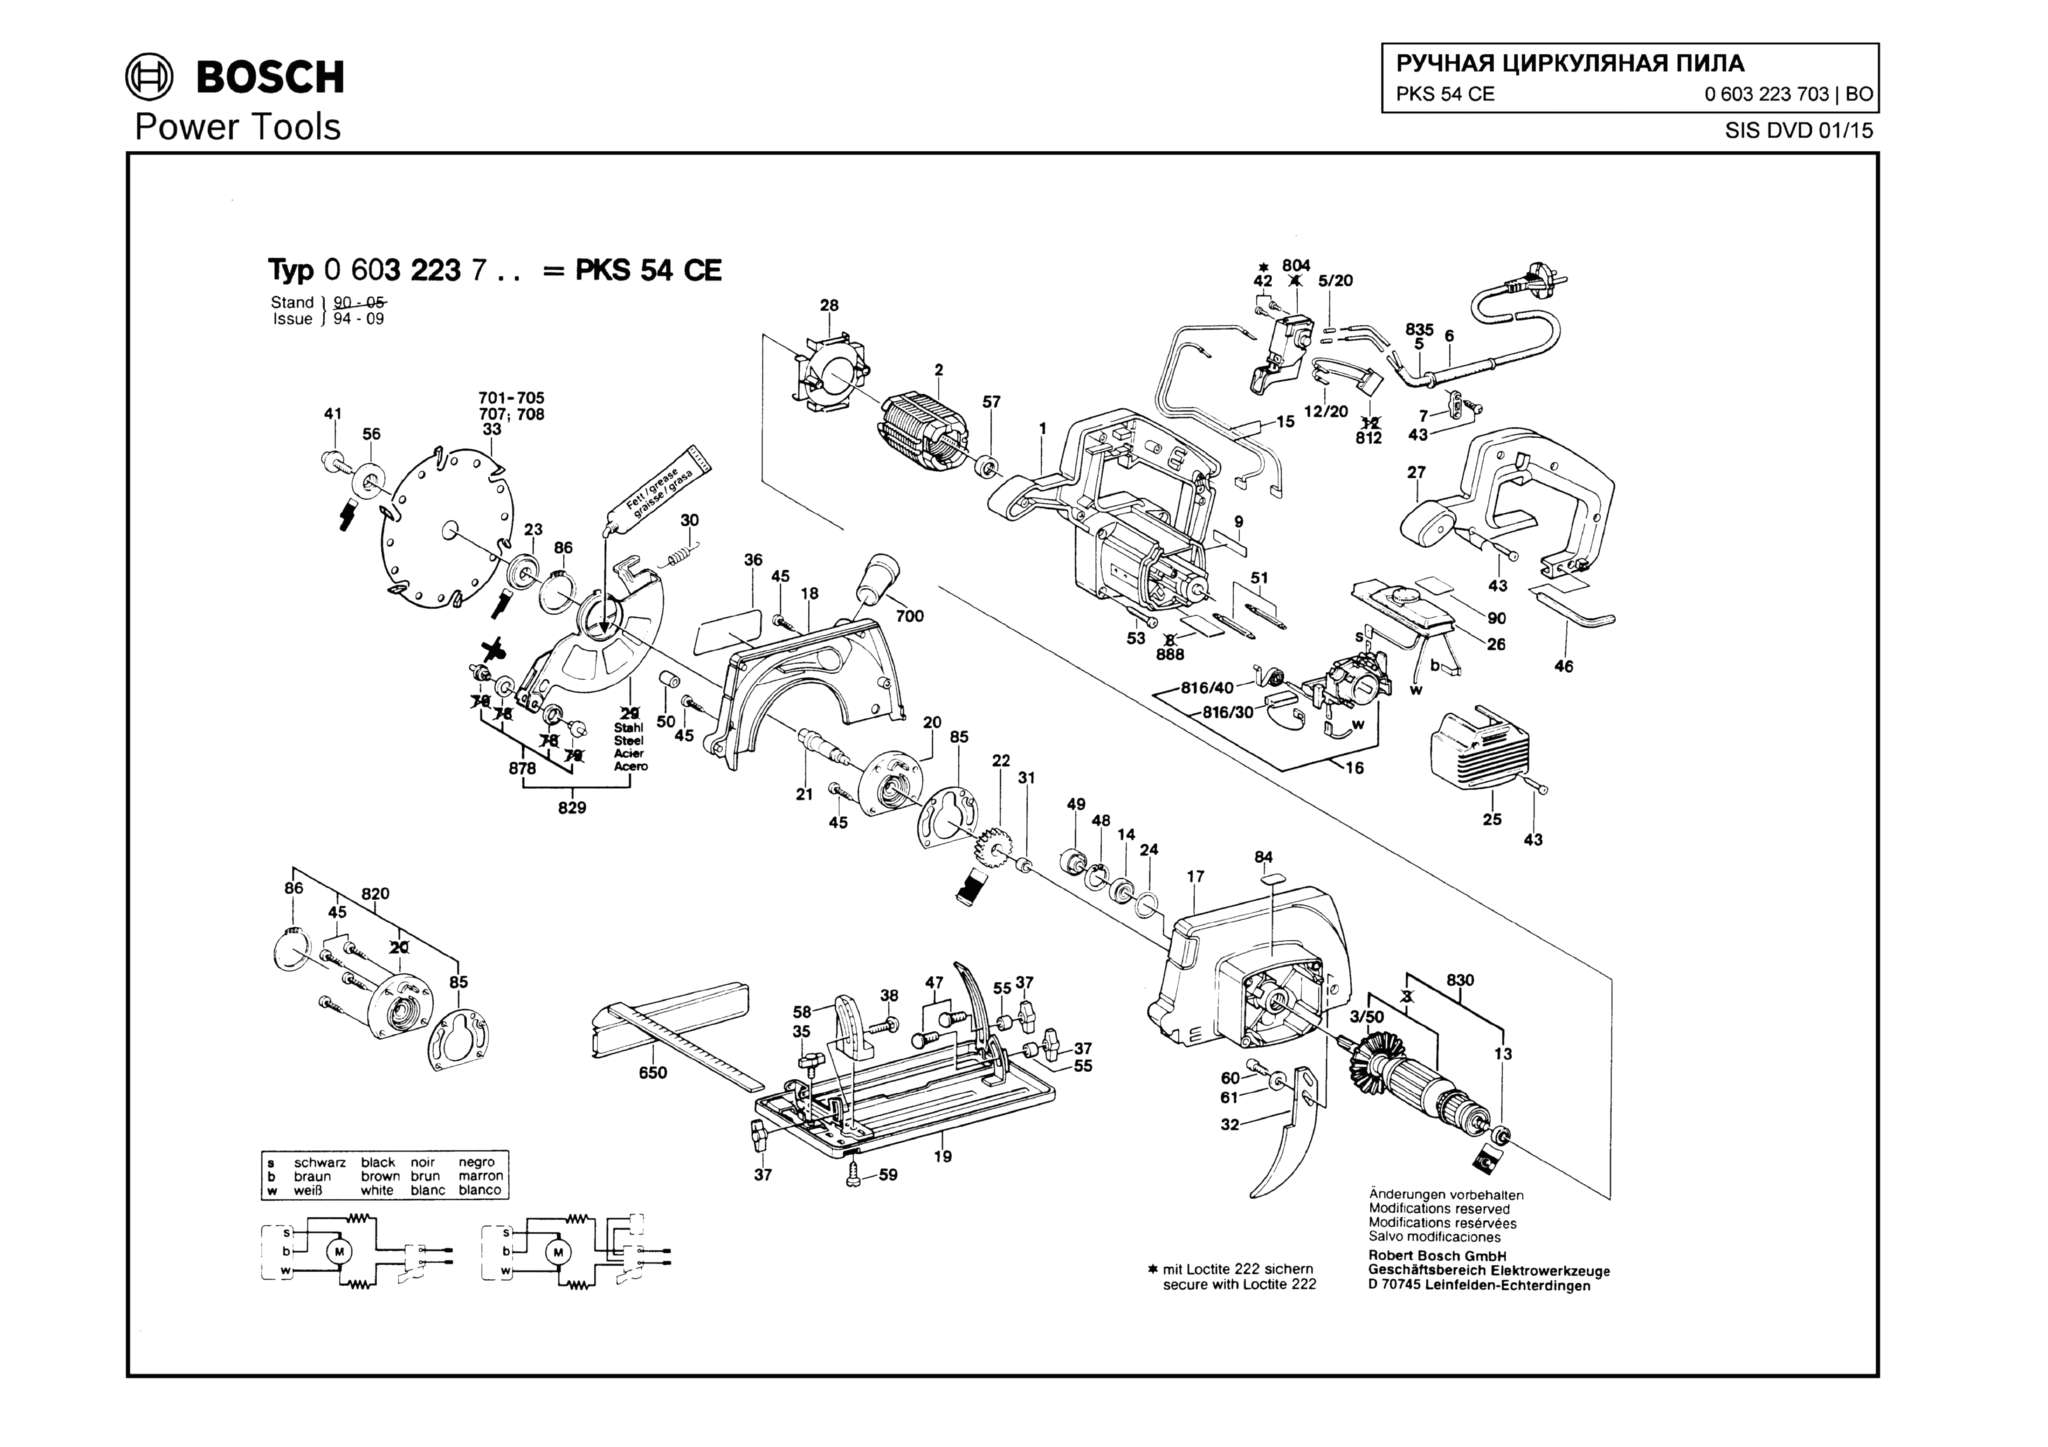 Запчасти, схема и деталировка Bosch PKS 54 CE (ТИП 0603223703)